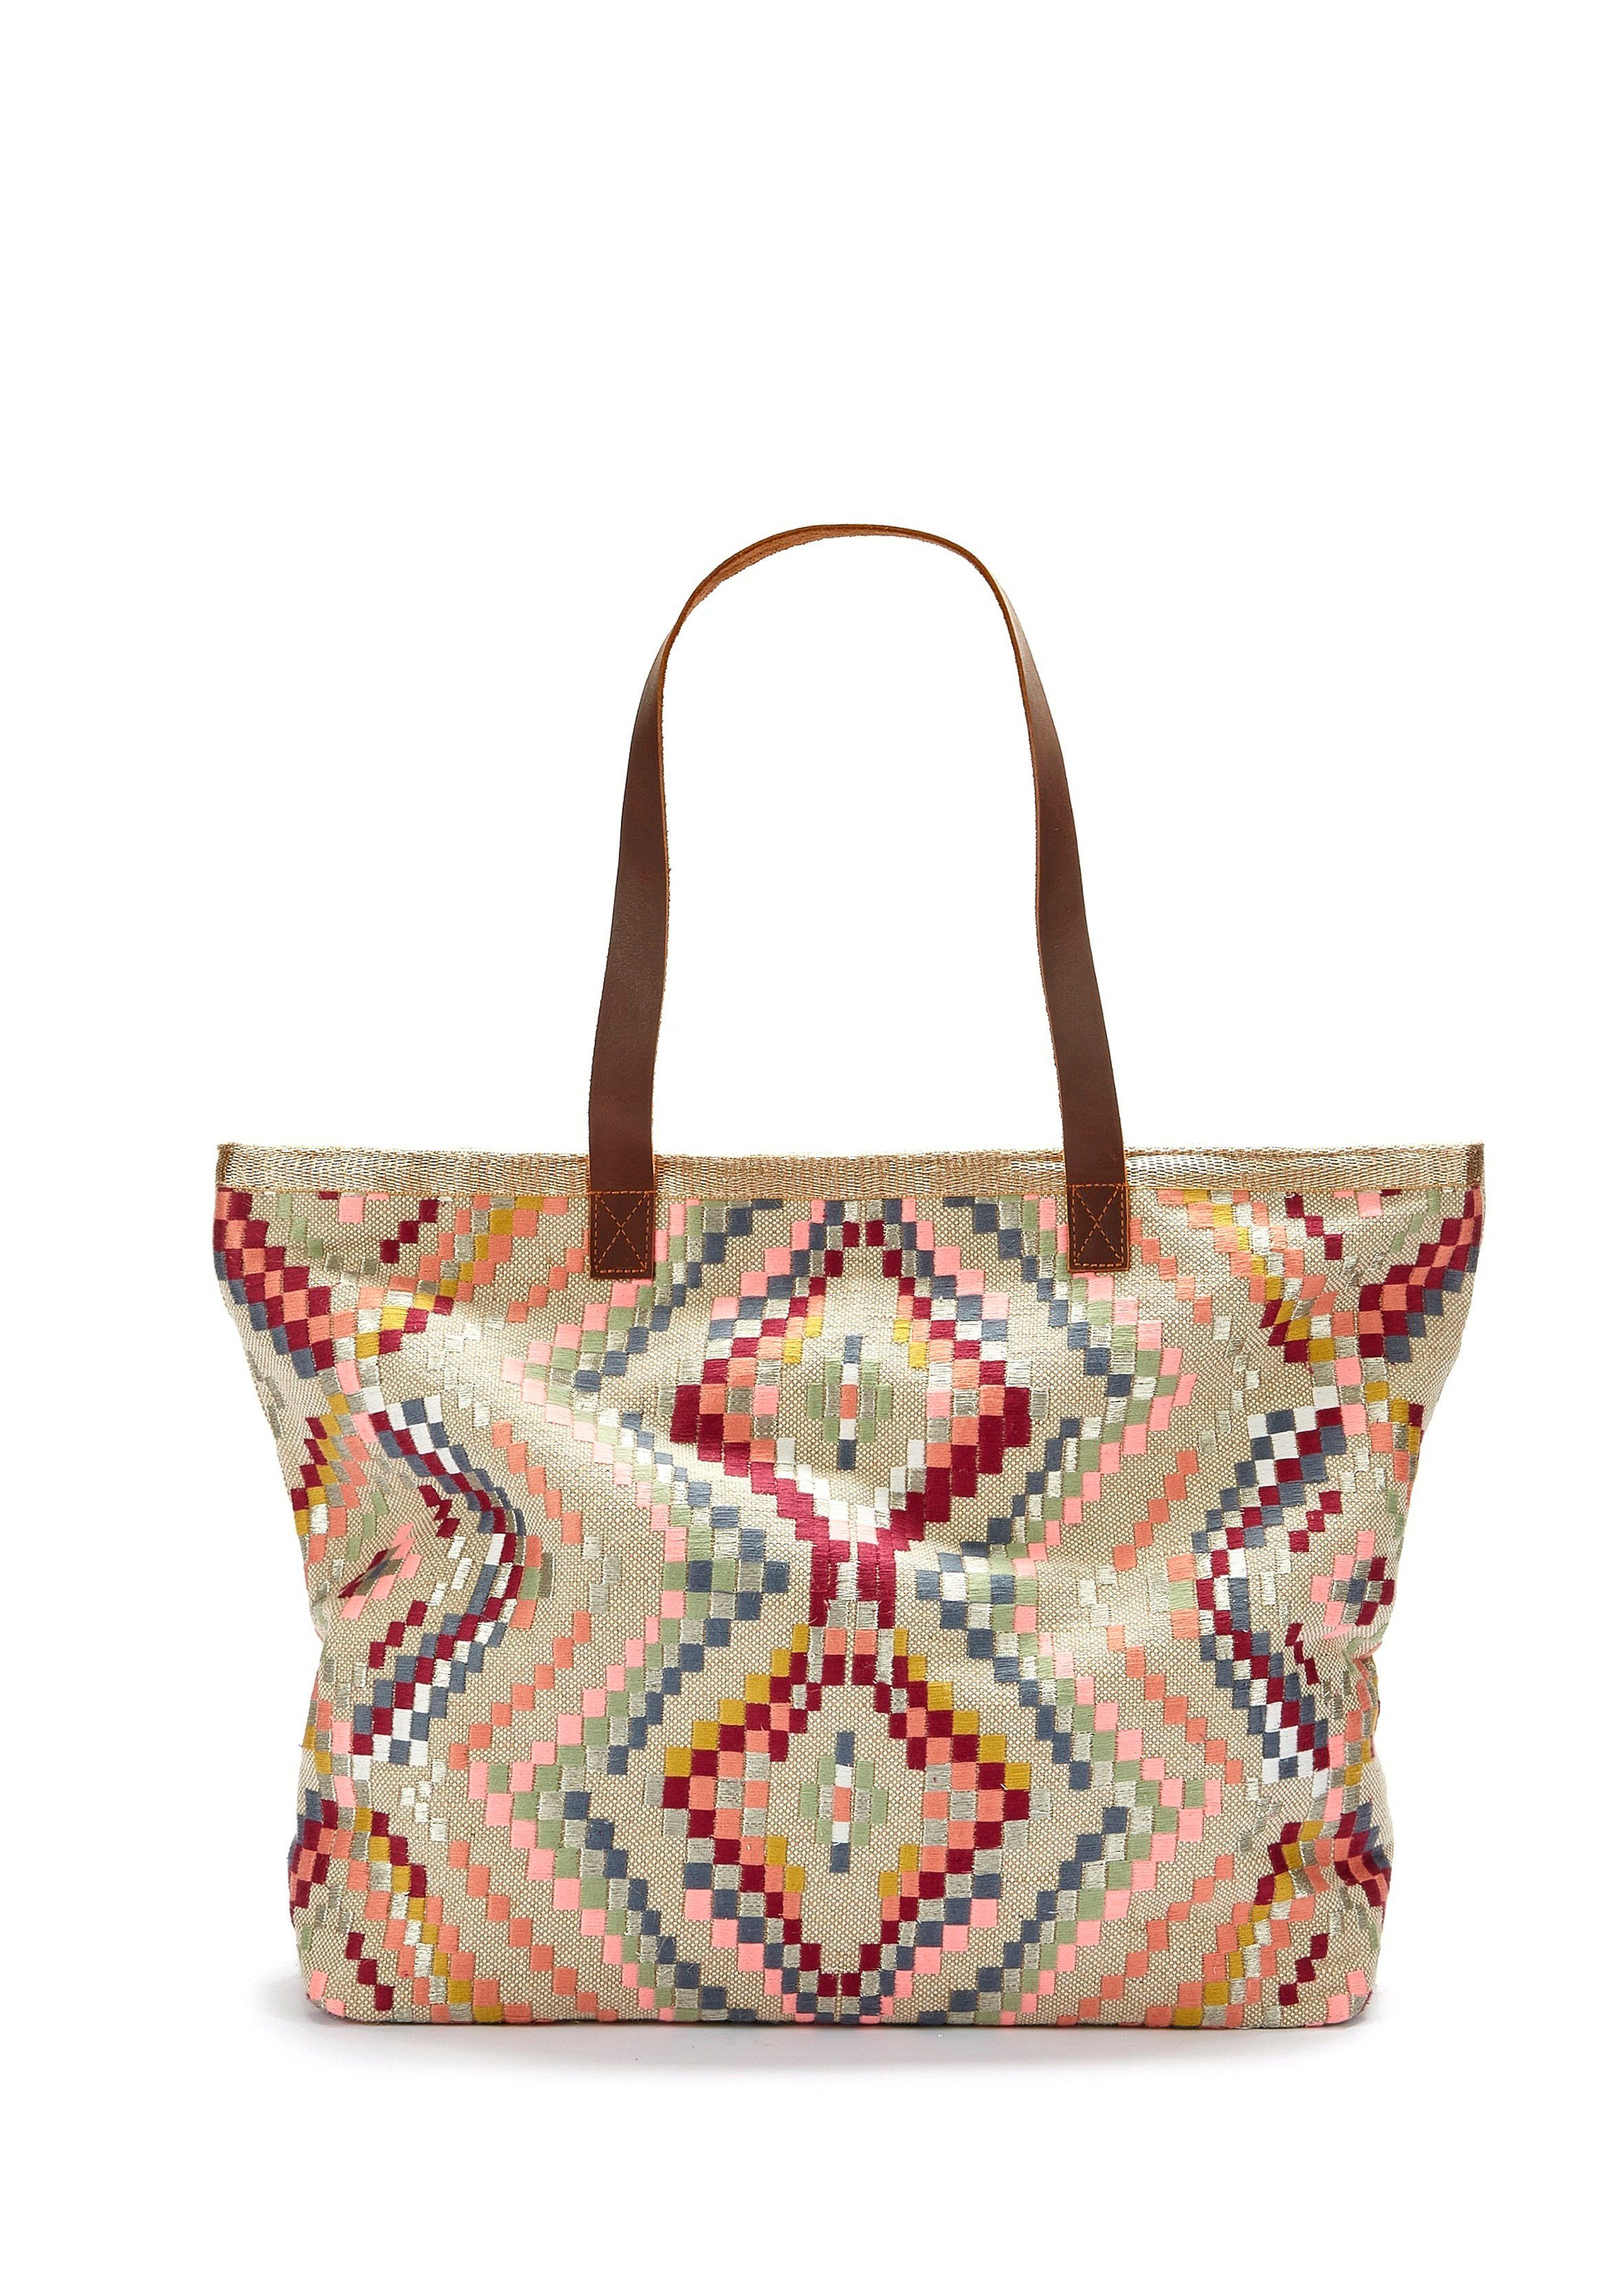 Strandtaschen für Damen shoppen | COUTURISTA Shop